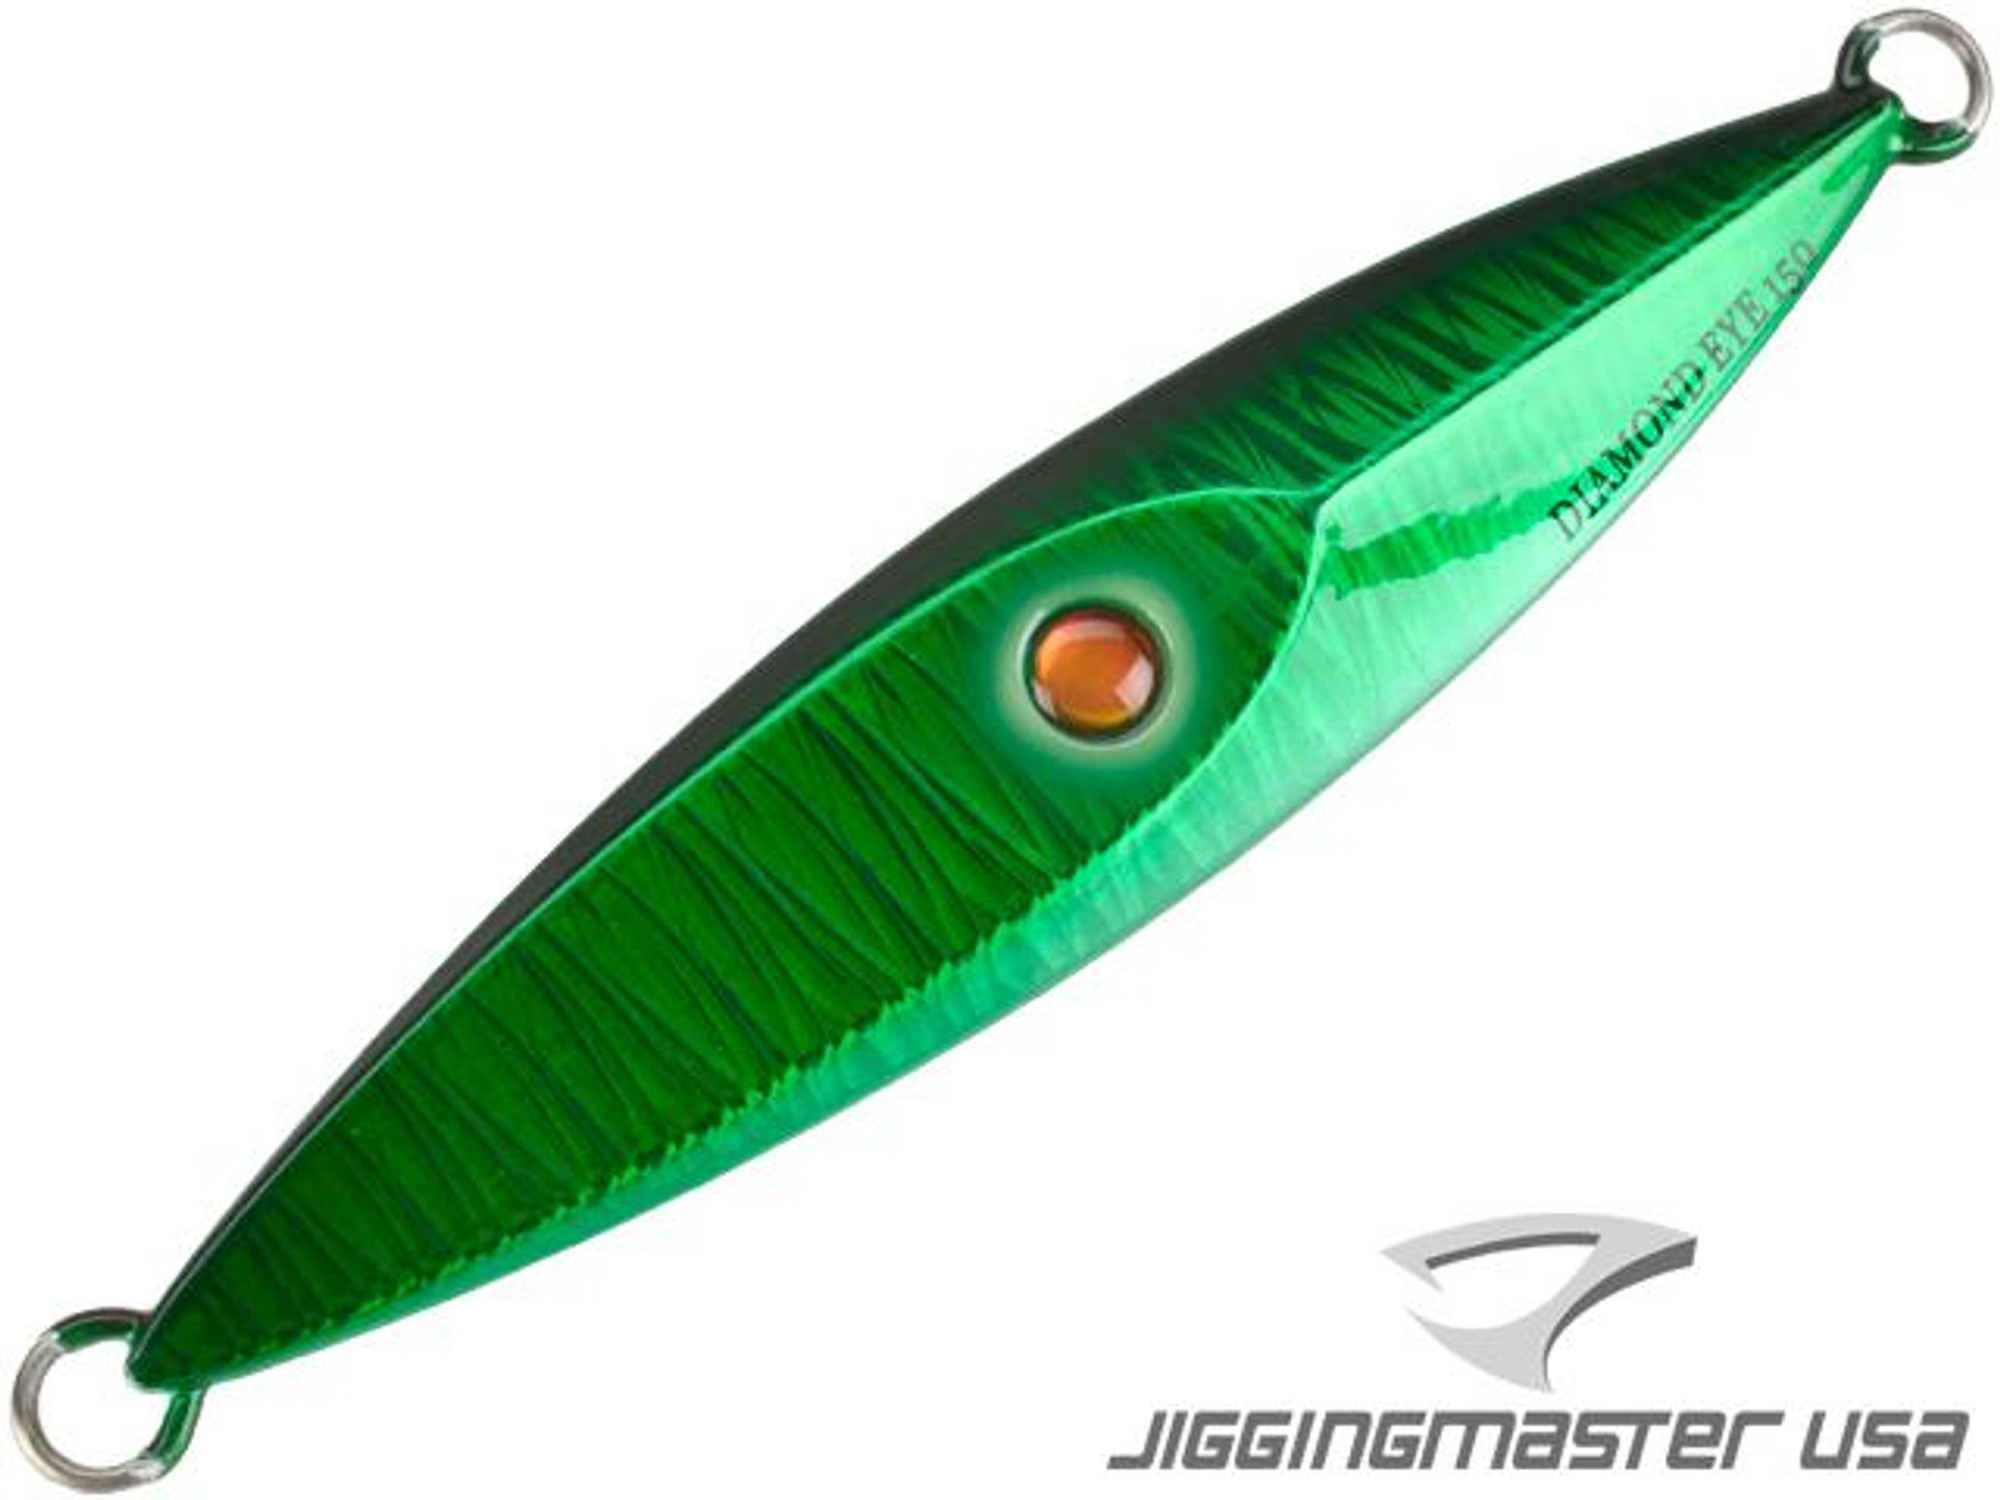 Jigging Master Diamond Eye Jig (Model: 300g #8)